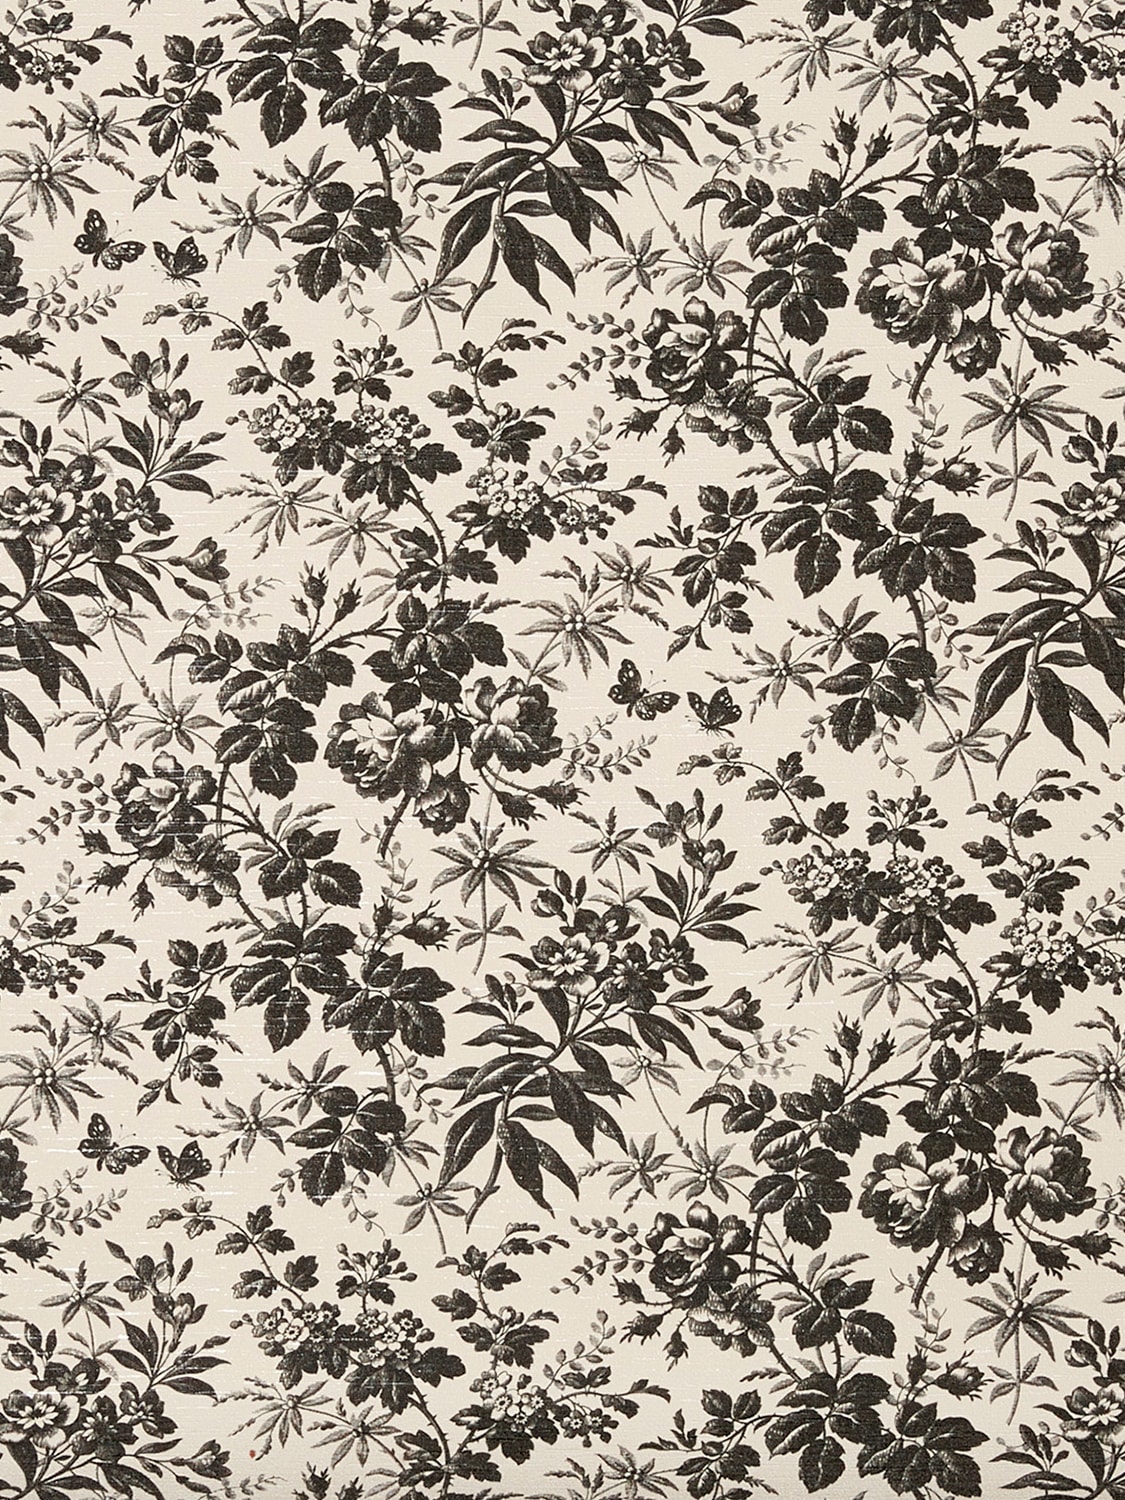 Herbarium Printed Wallpaper